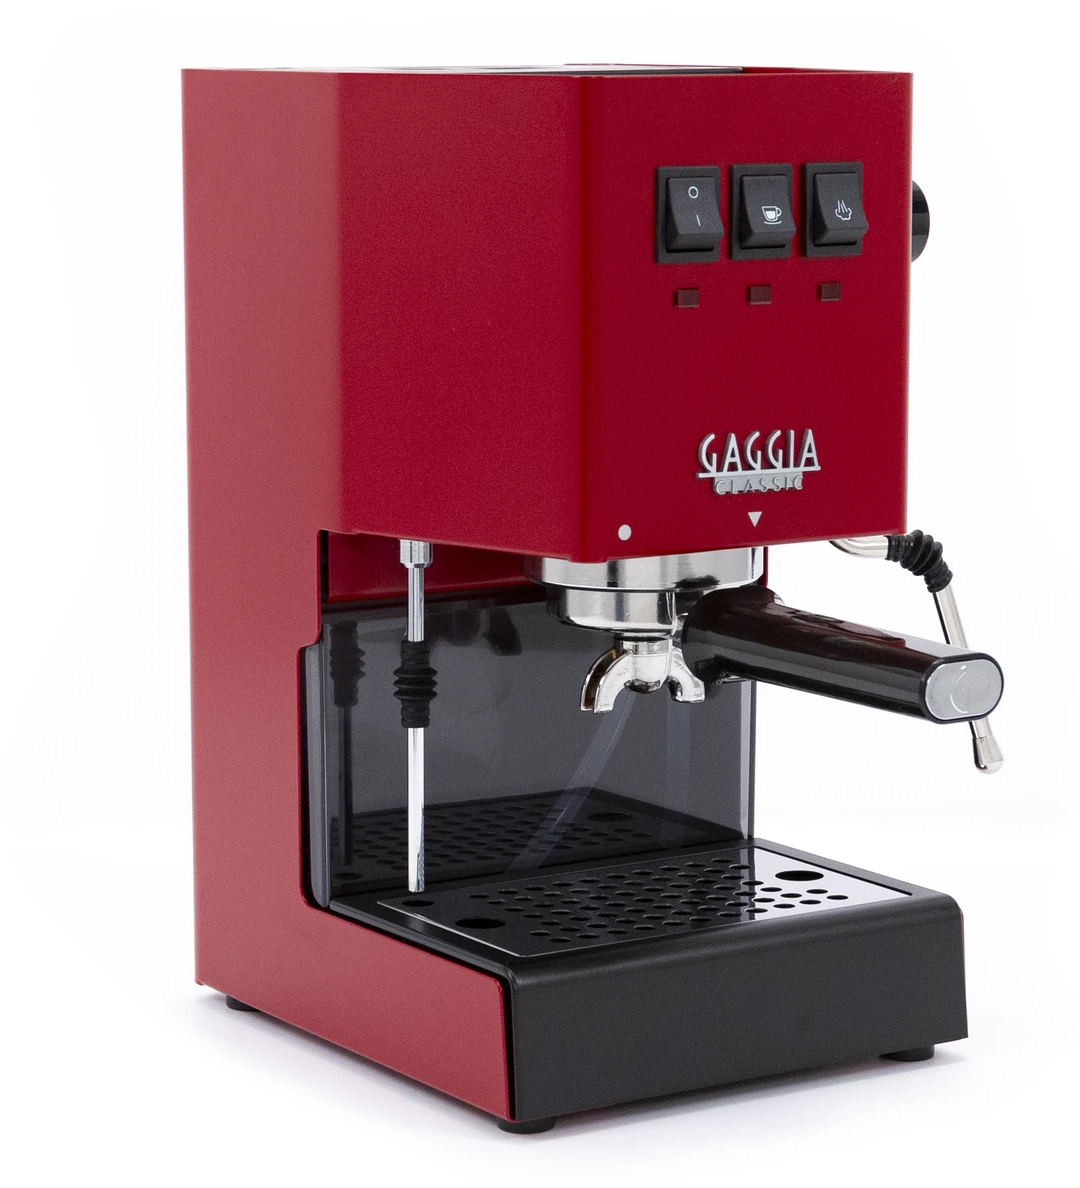 Gaggia Classic Pro Espresso Machine Cherry Red